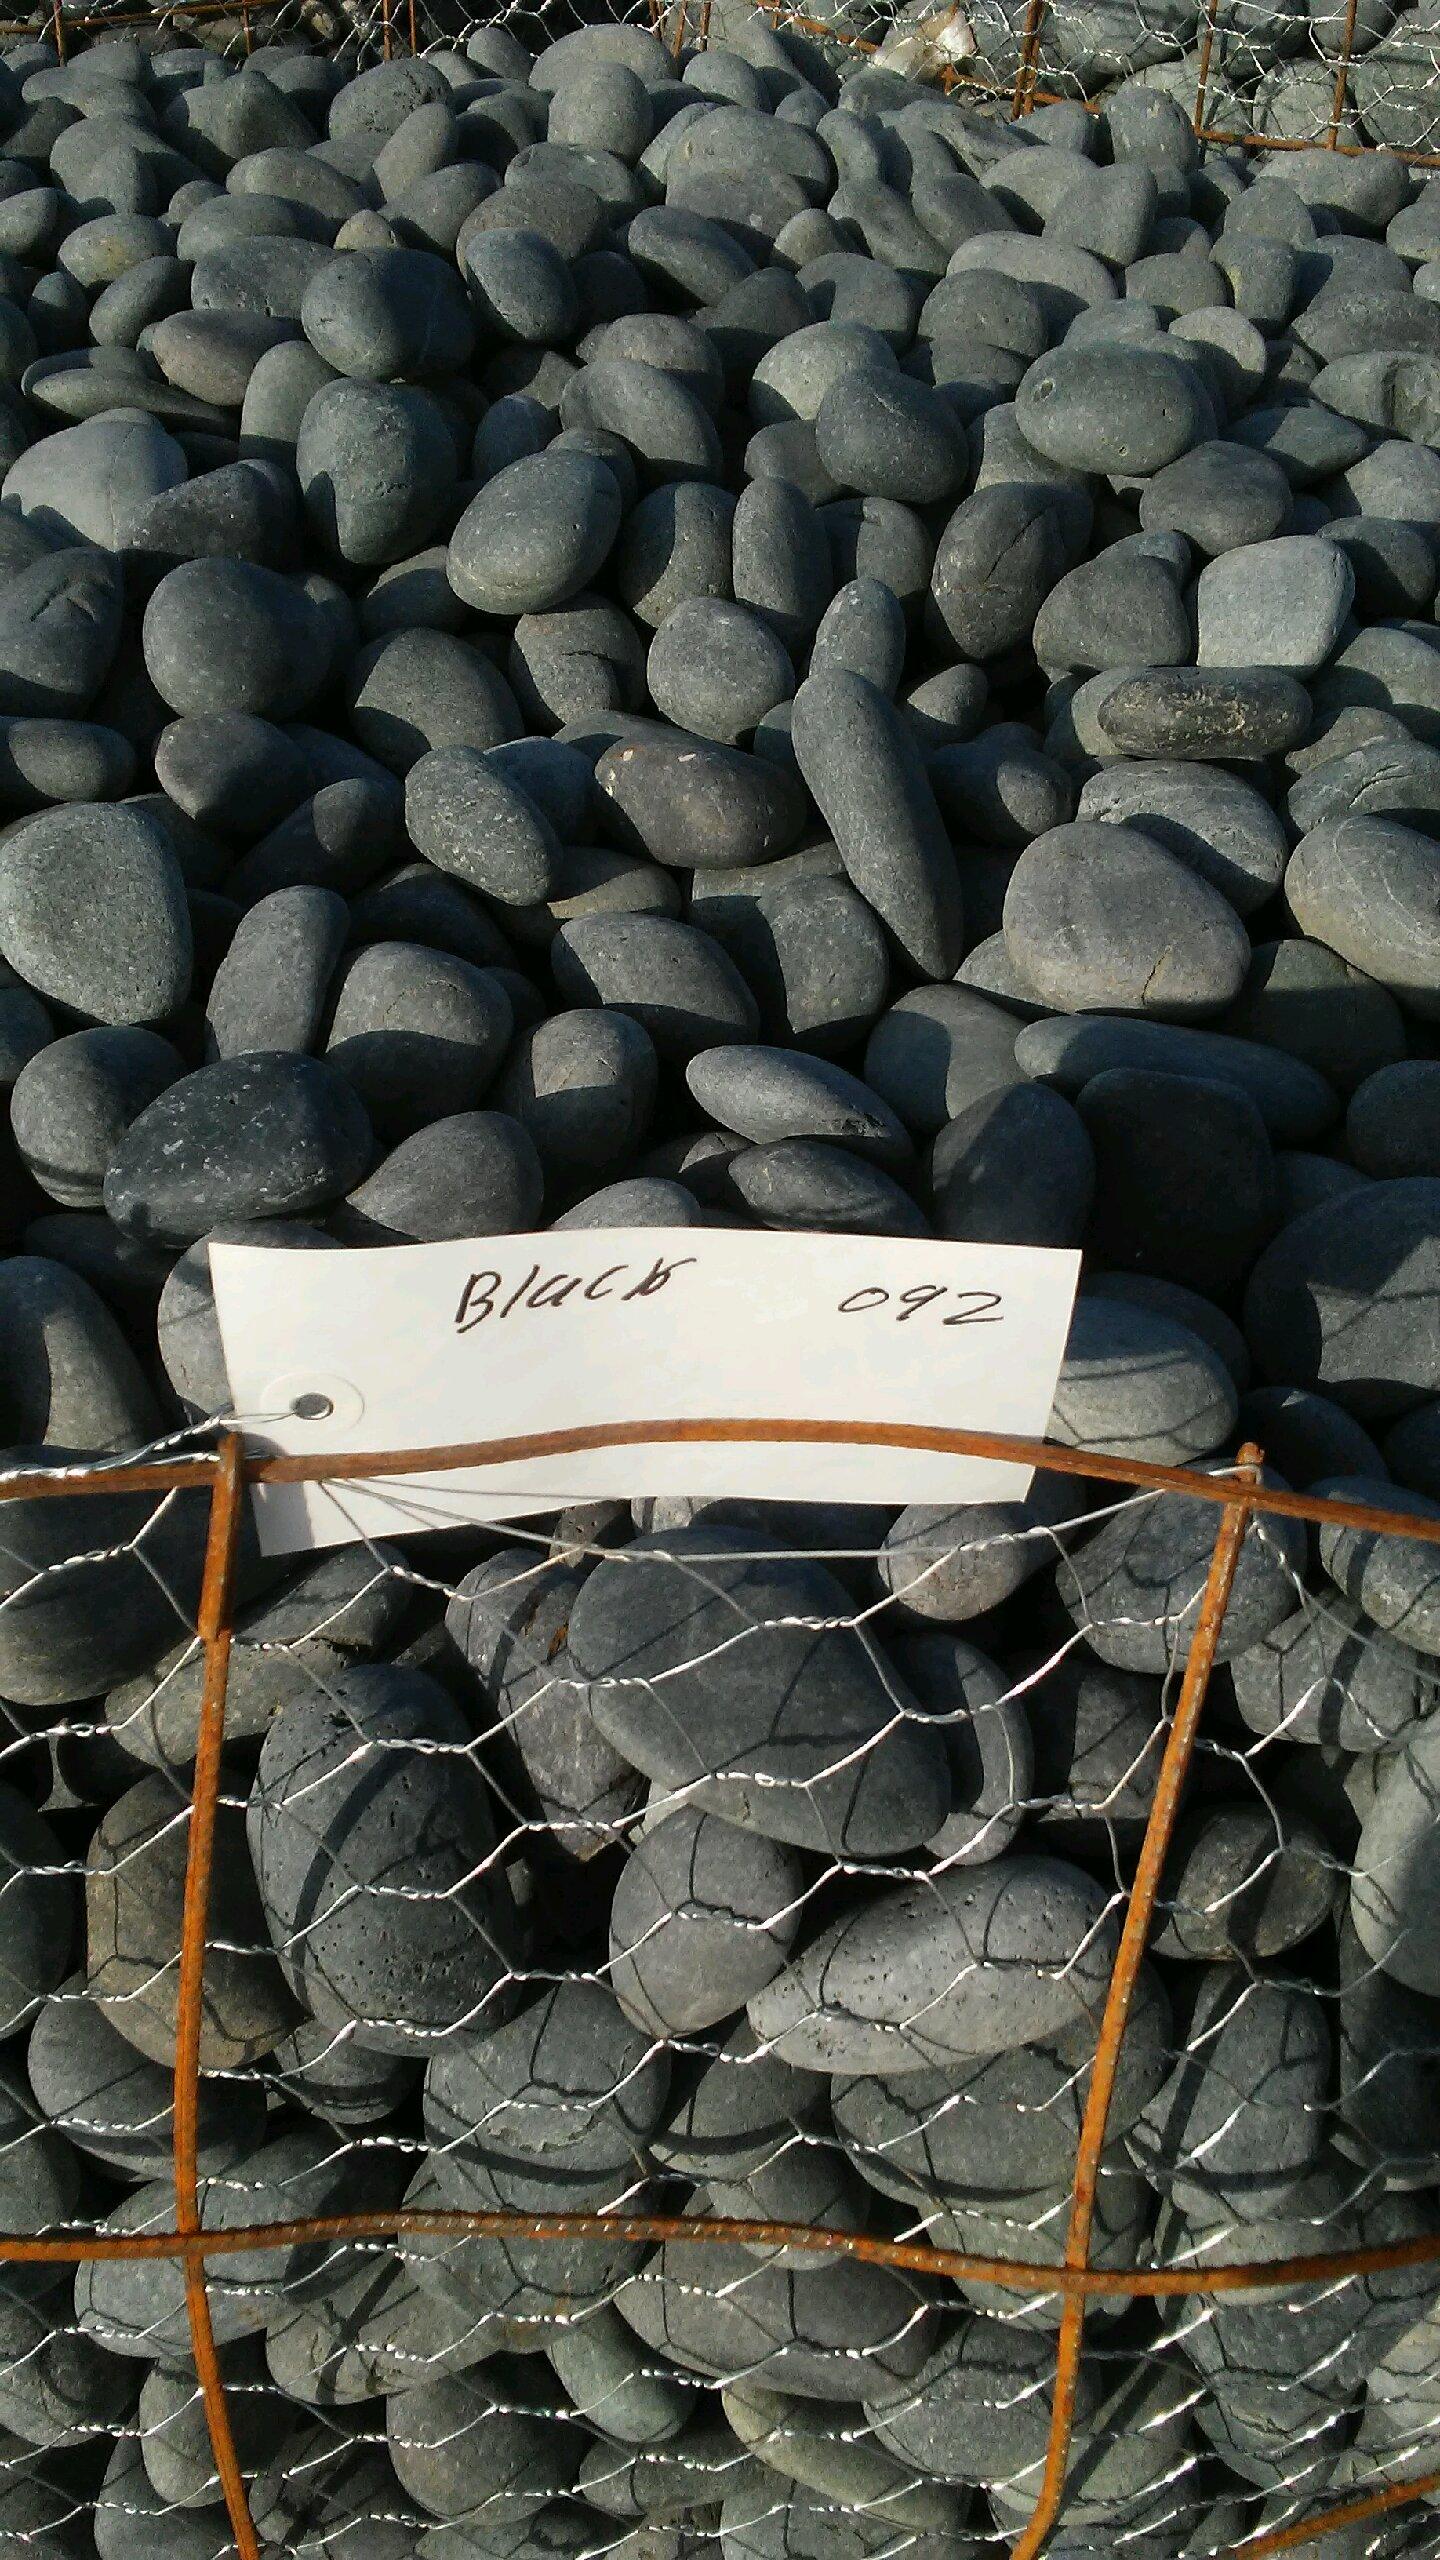 Black-Beach-Pebbles-in-Basket